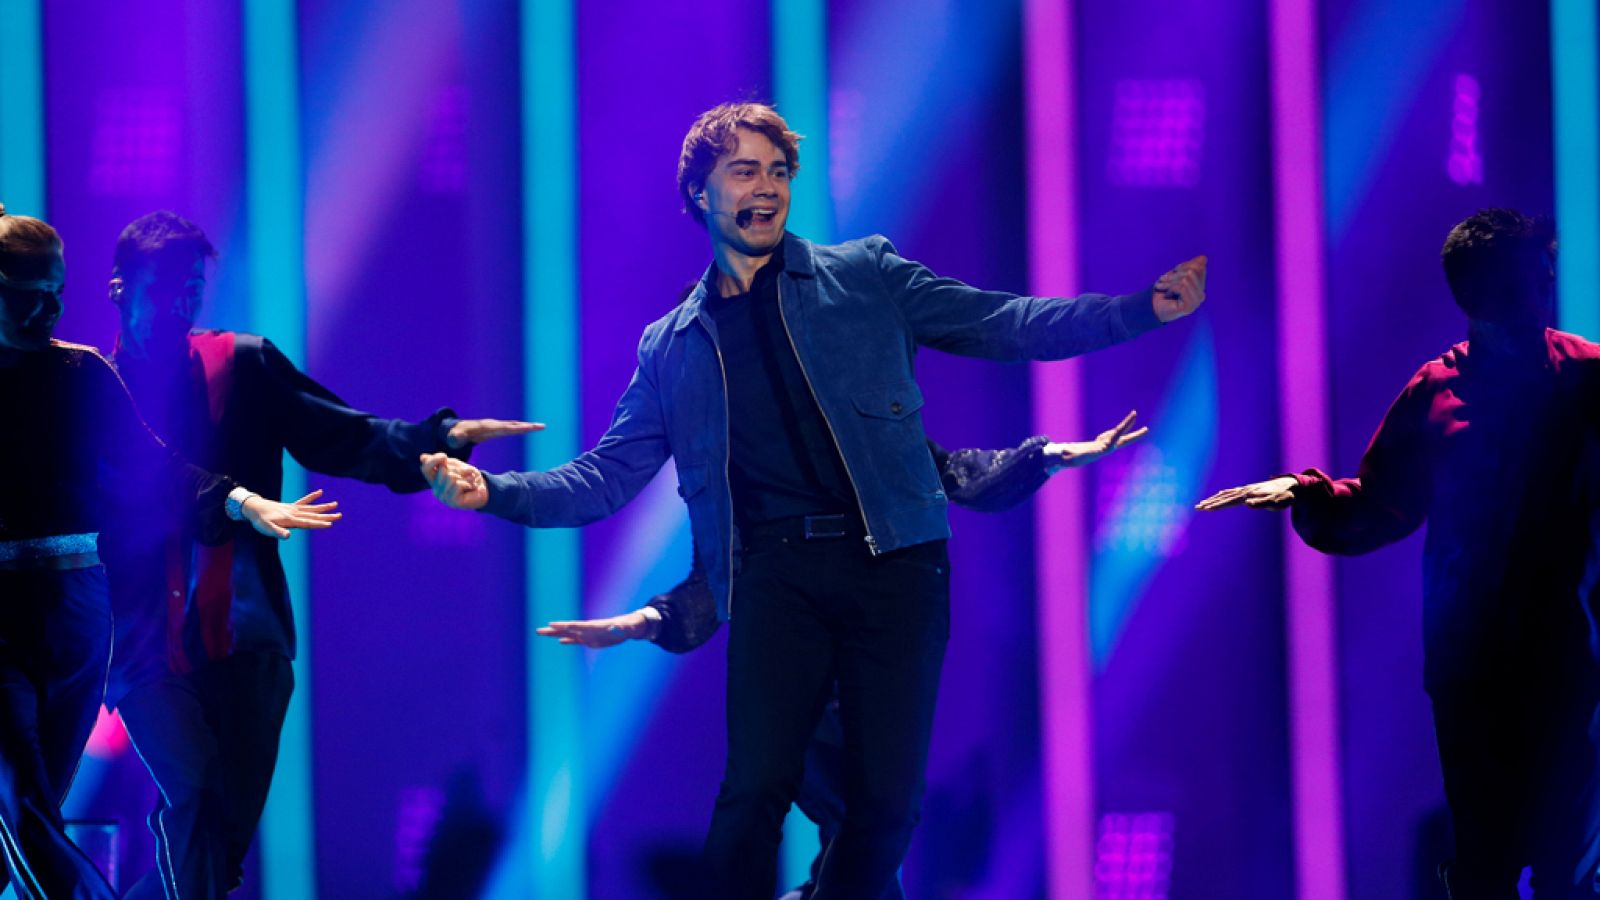 Alexander Rybak, representante noruego en el Festival de Eurovisión